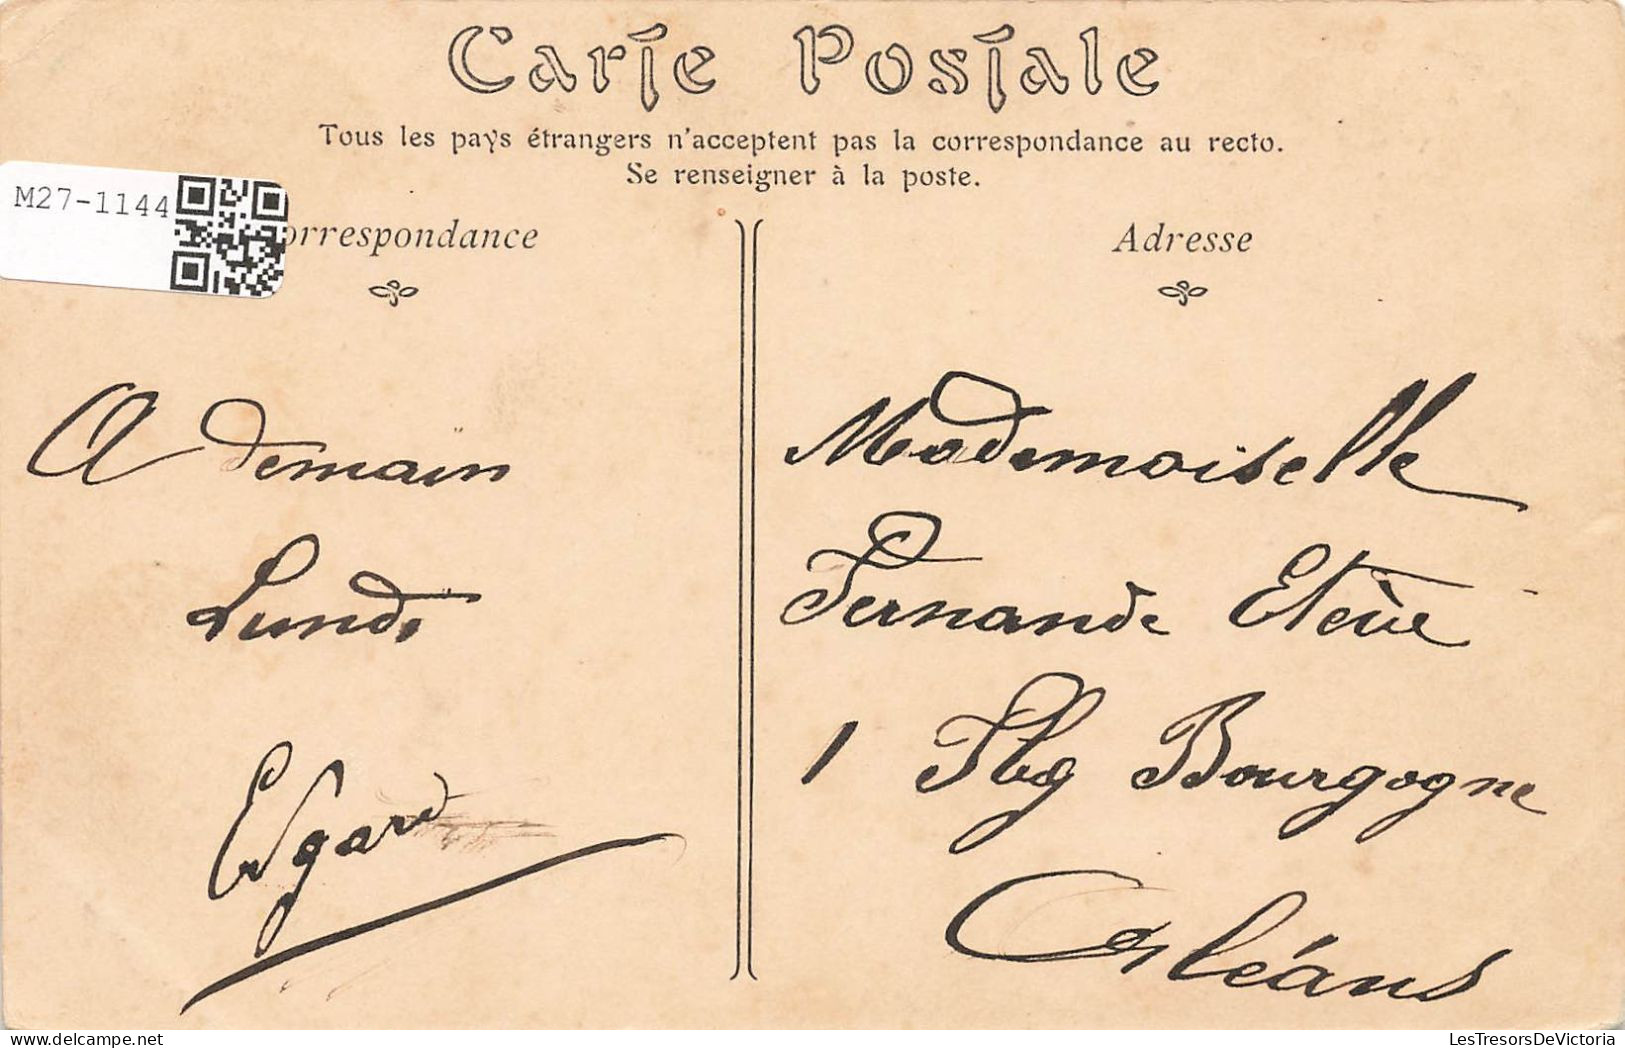 FRANCE - Château De Chantilly - La Cour D'honneur - Carte Postale Ancienne - Chantilly